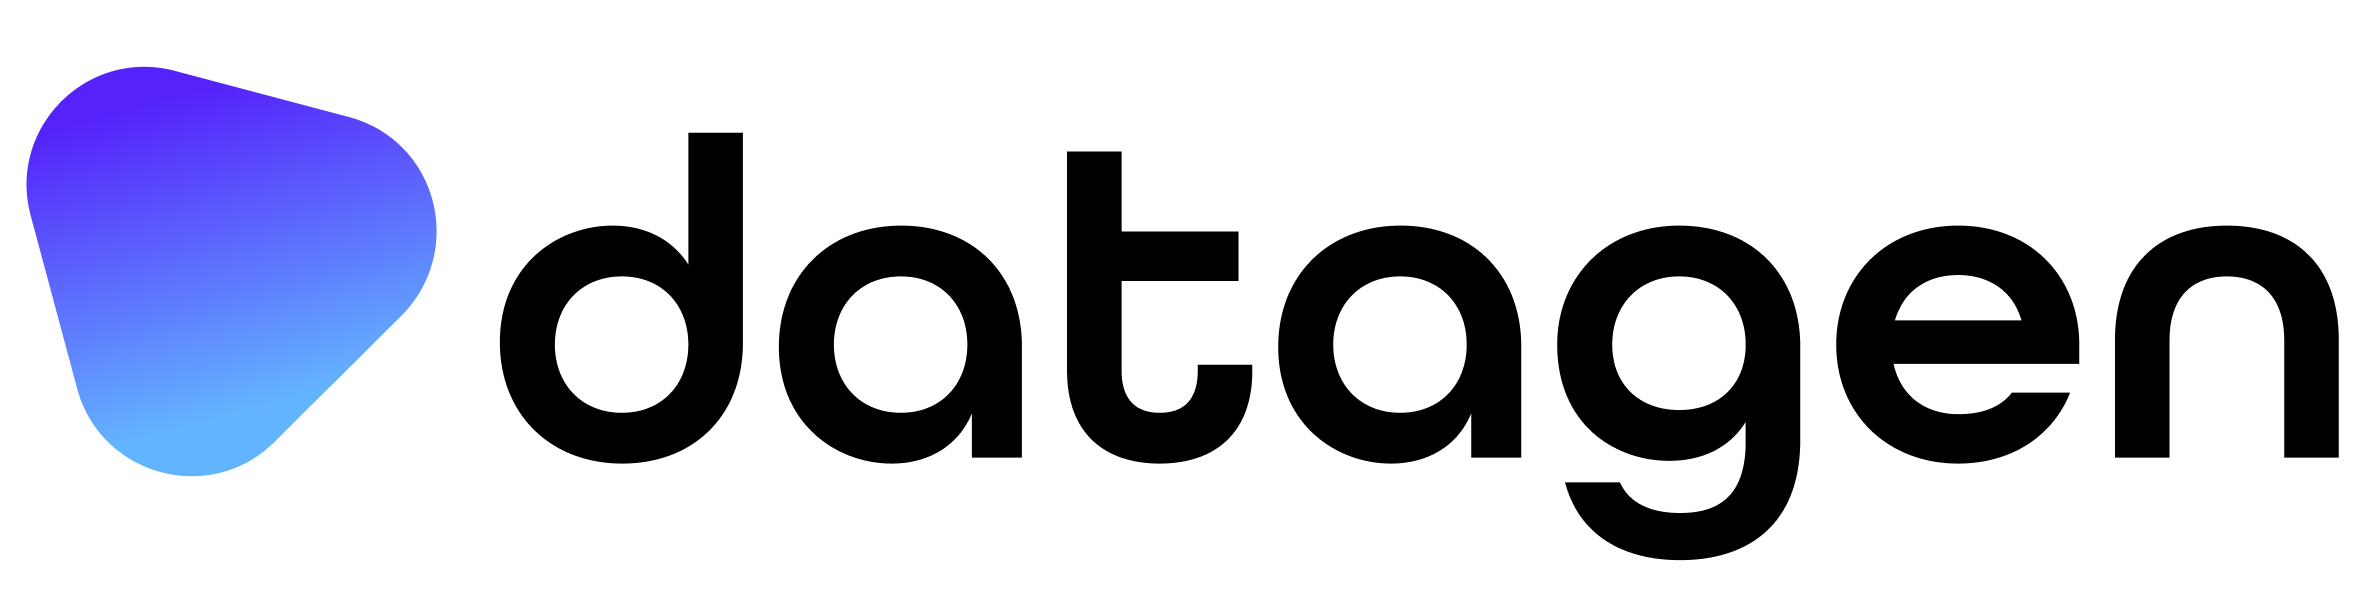 Datagen_logo (1).png